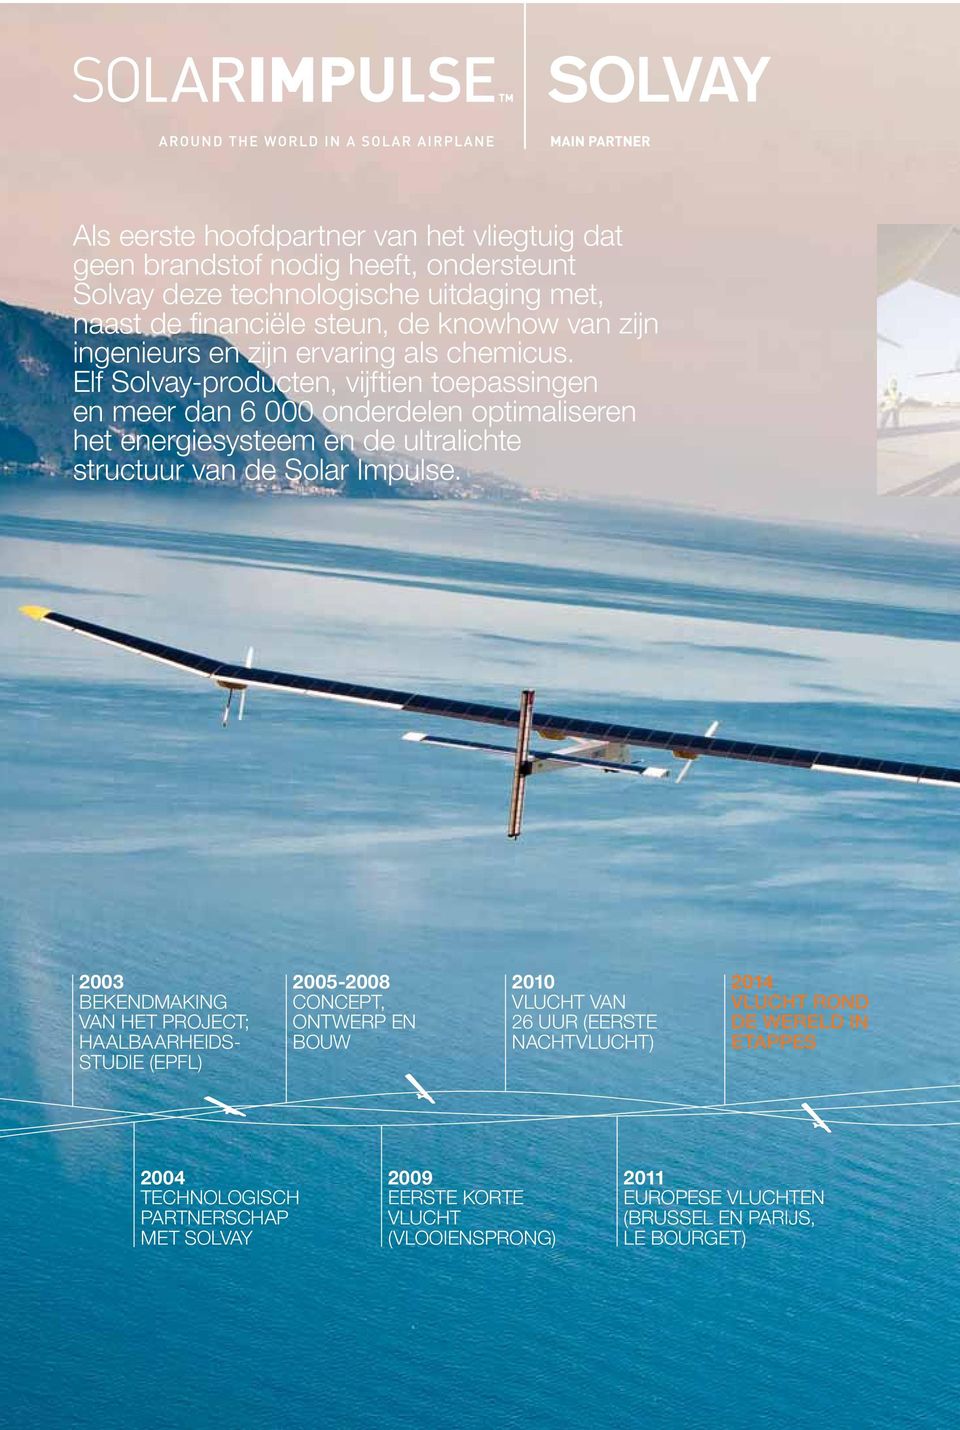 Elf Solvay-producten, vijftien toepassingen en meer dan 6 000 onderdelen optimaliseren het energiesysteem en de ultralichte structuur van de Solar Impulse.